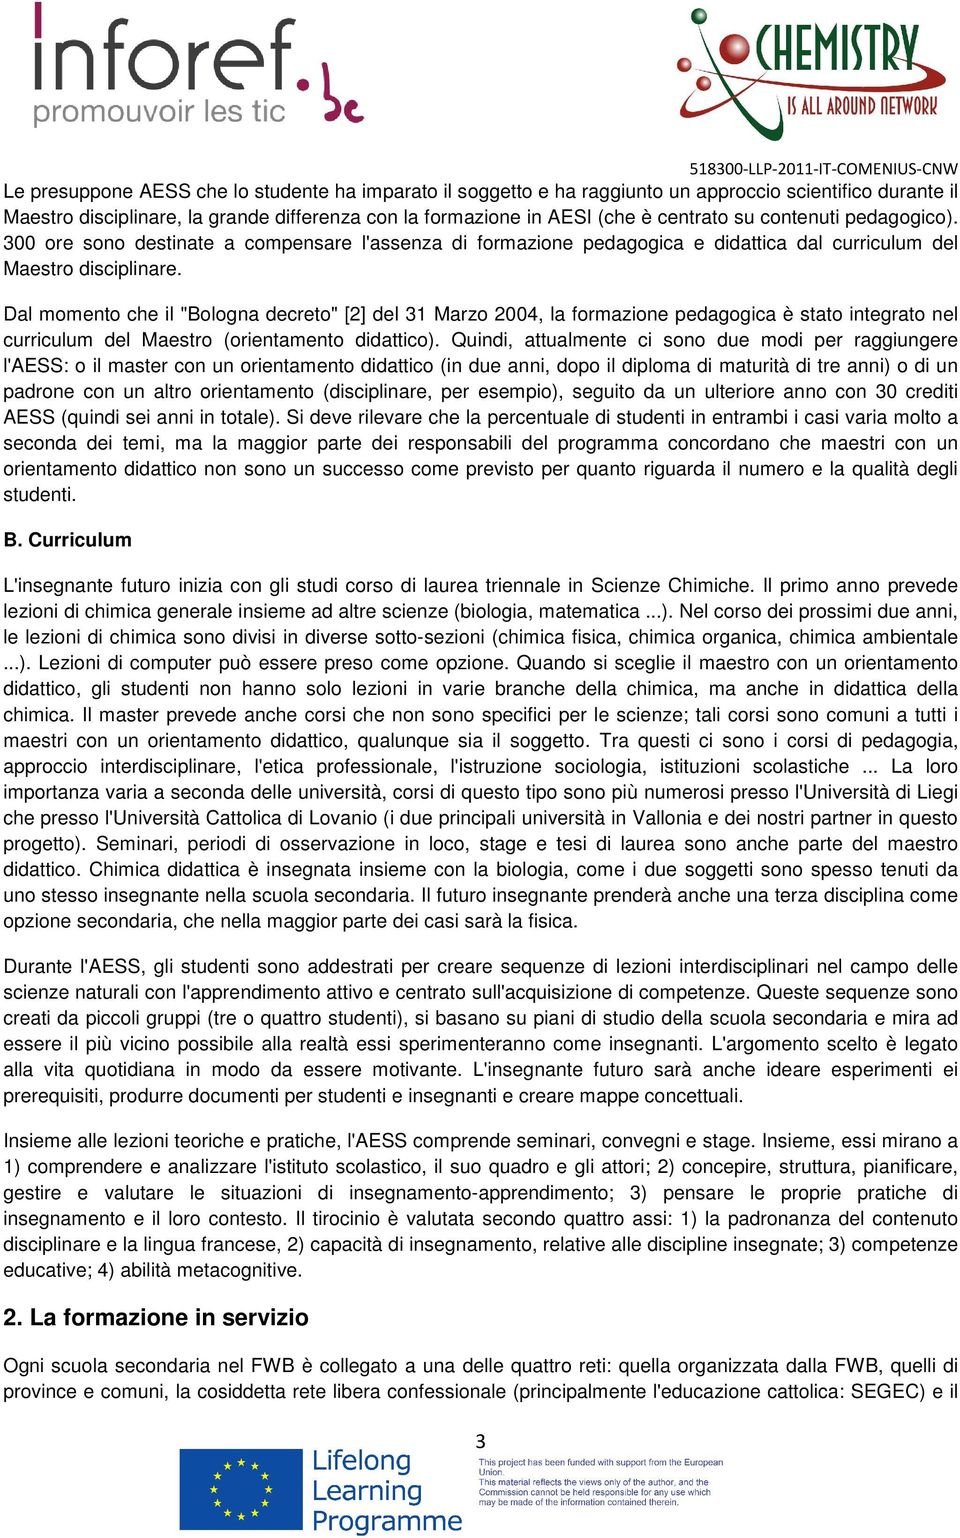 Dal momento che il "Bologna decreto" [2] del 31 Marzo 2004, la formazione pedagogica è stato integrato nel curriculum del Maestro (orientamento didattico).